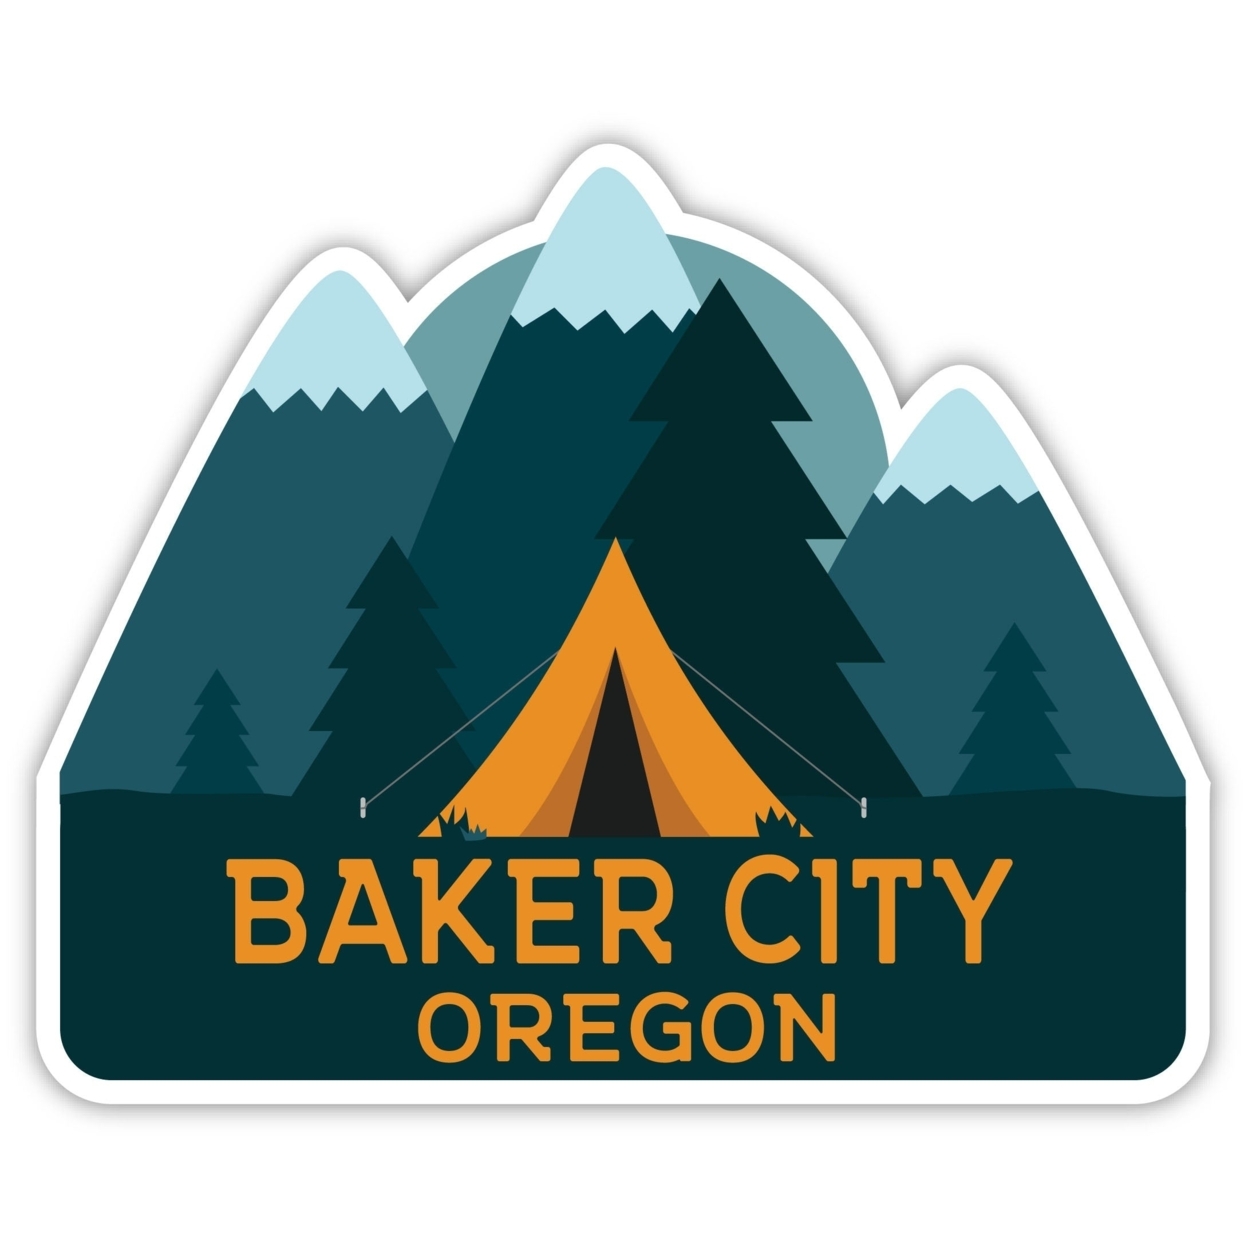 Baker City Oregon Souvenir Decorative Stickers (Choose Theme And Size) - Single Unit, 4-Inch, Tent